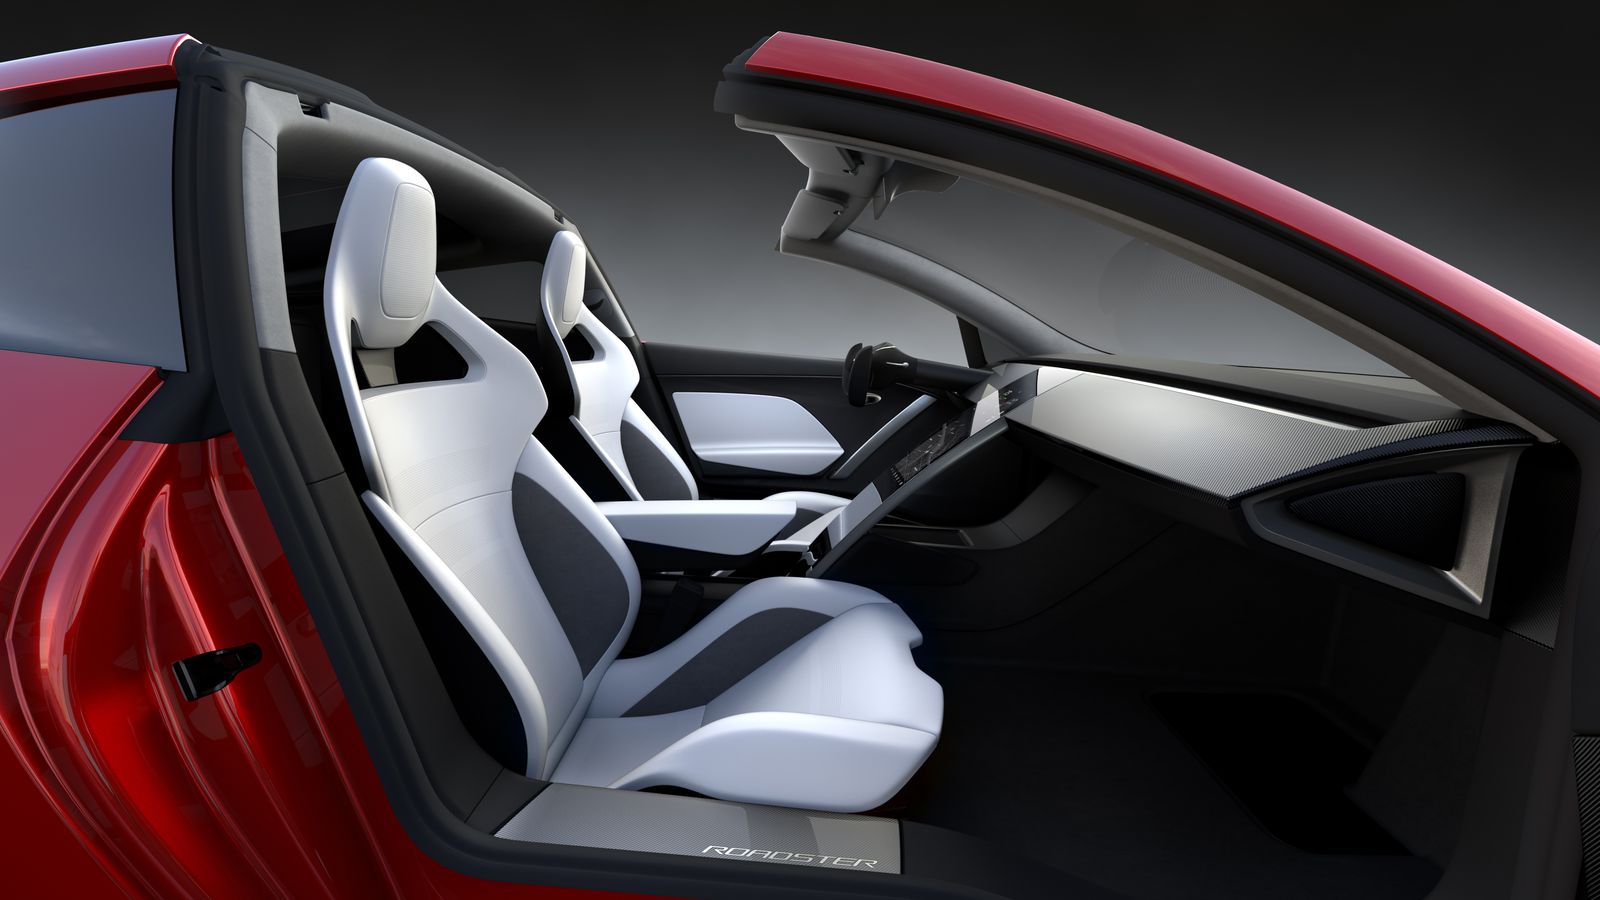 İkinci nesil Tesla Roadster 2020'de yollarda olacak